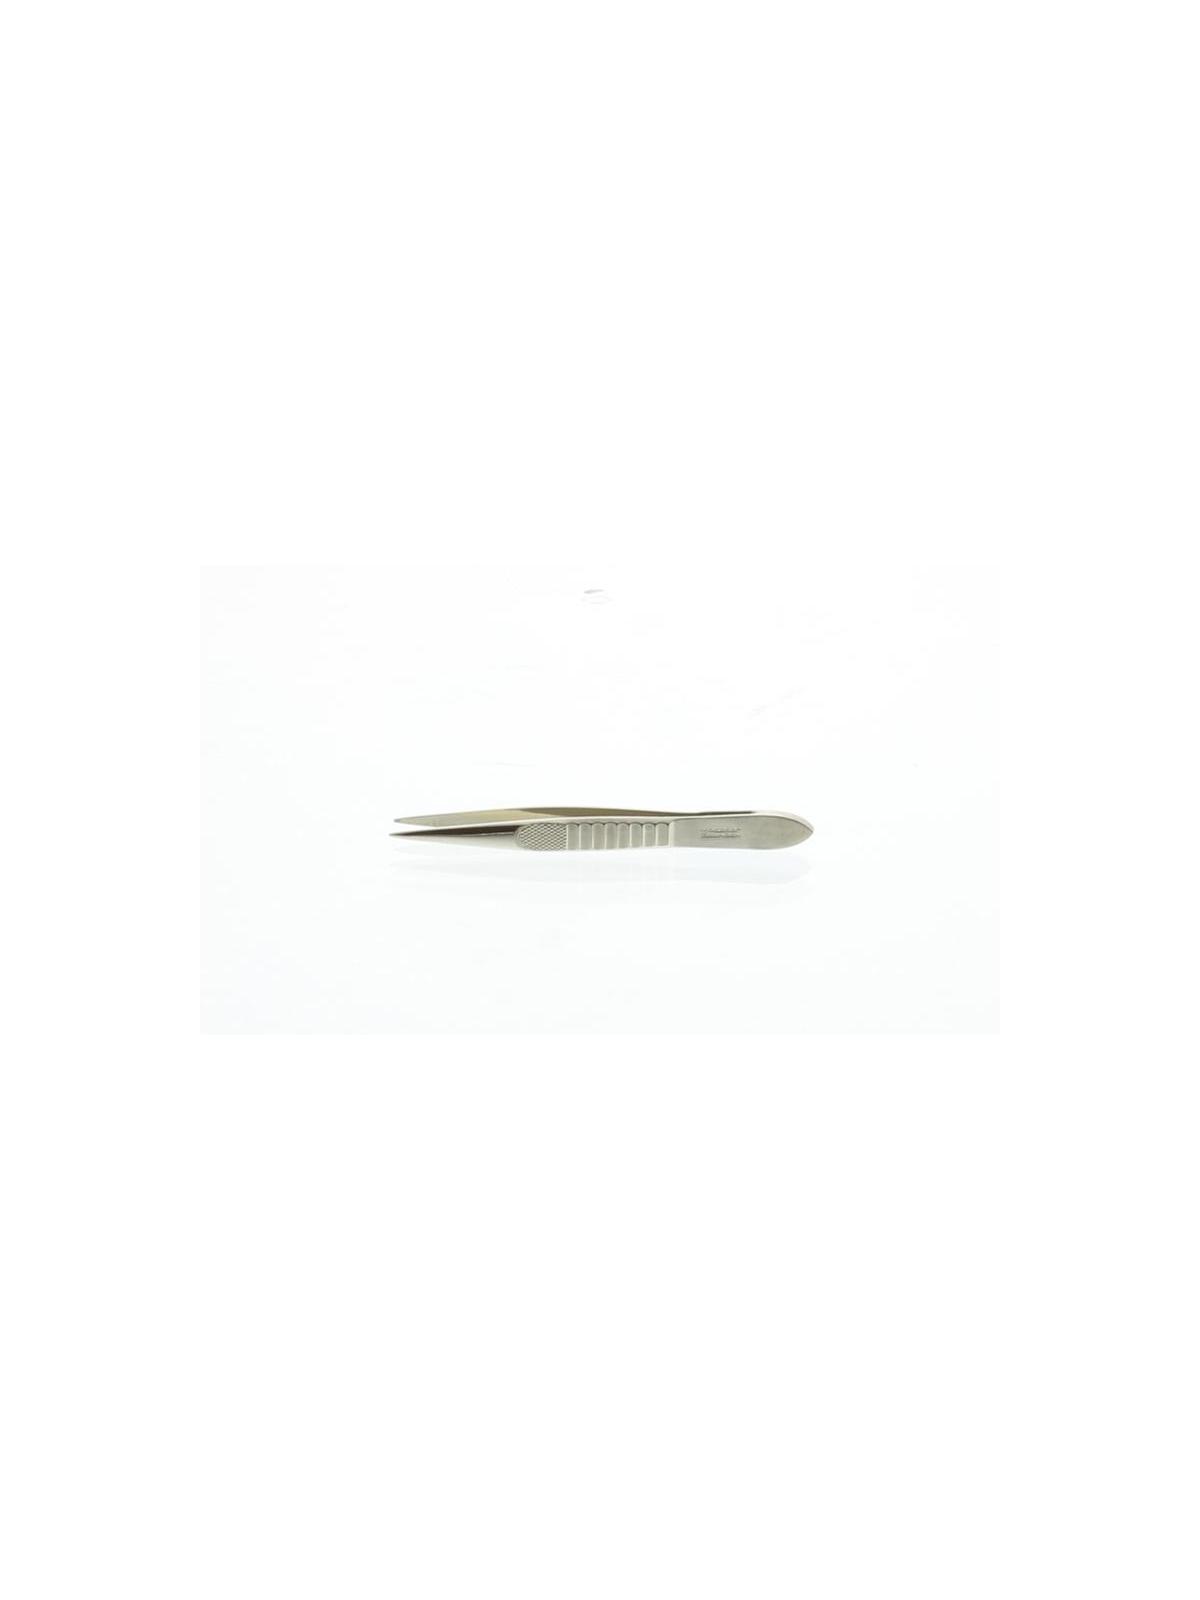 Splinterpincet 6.5 cm 424-2